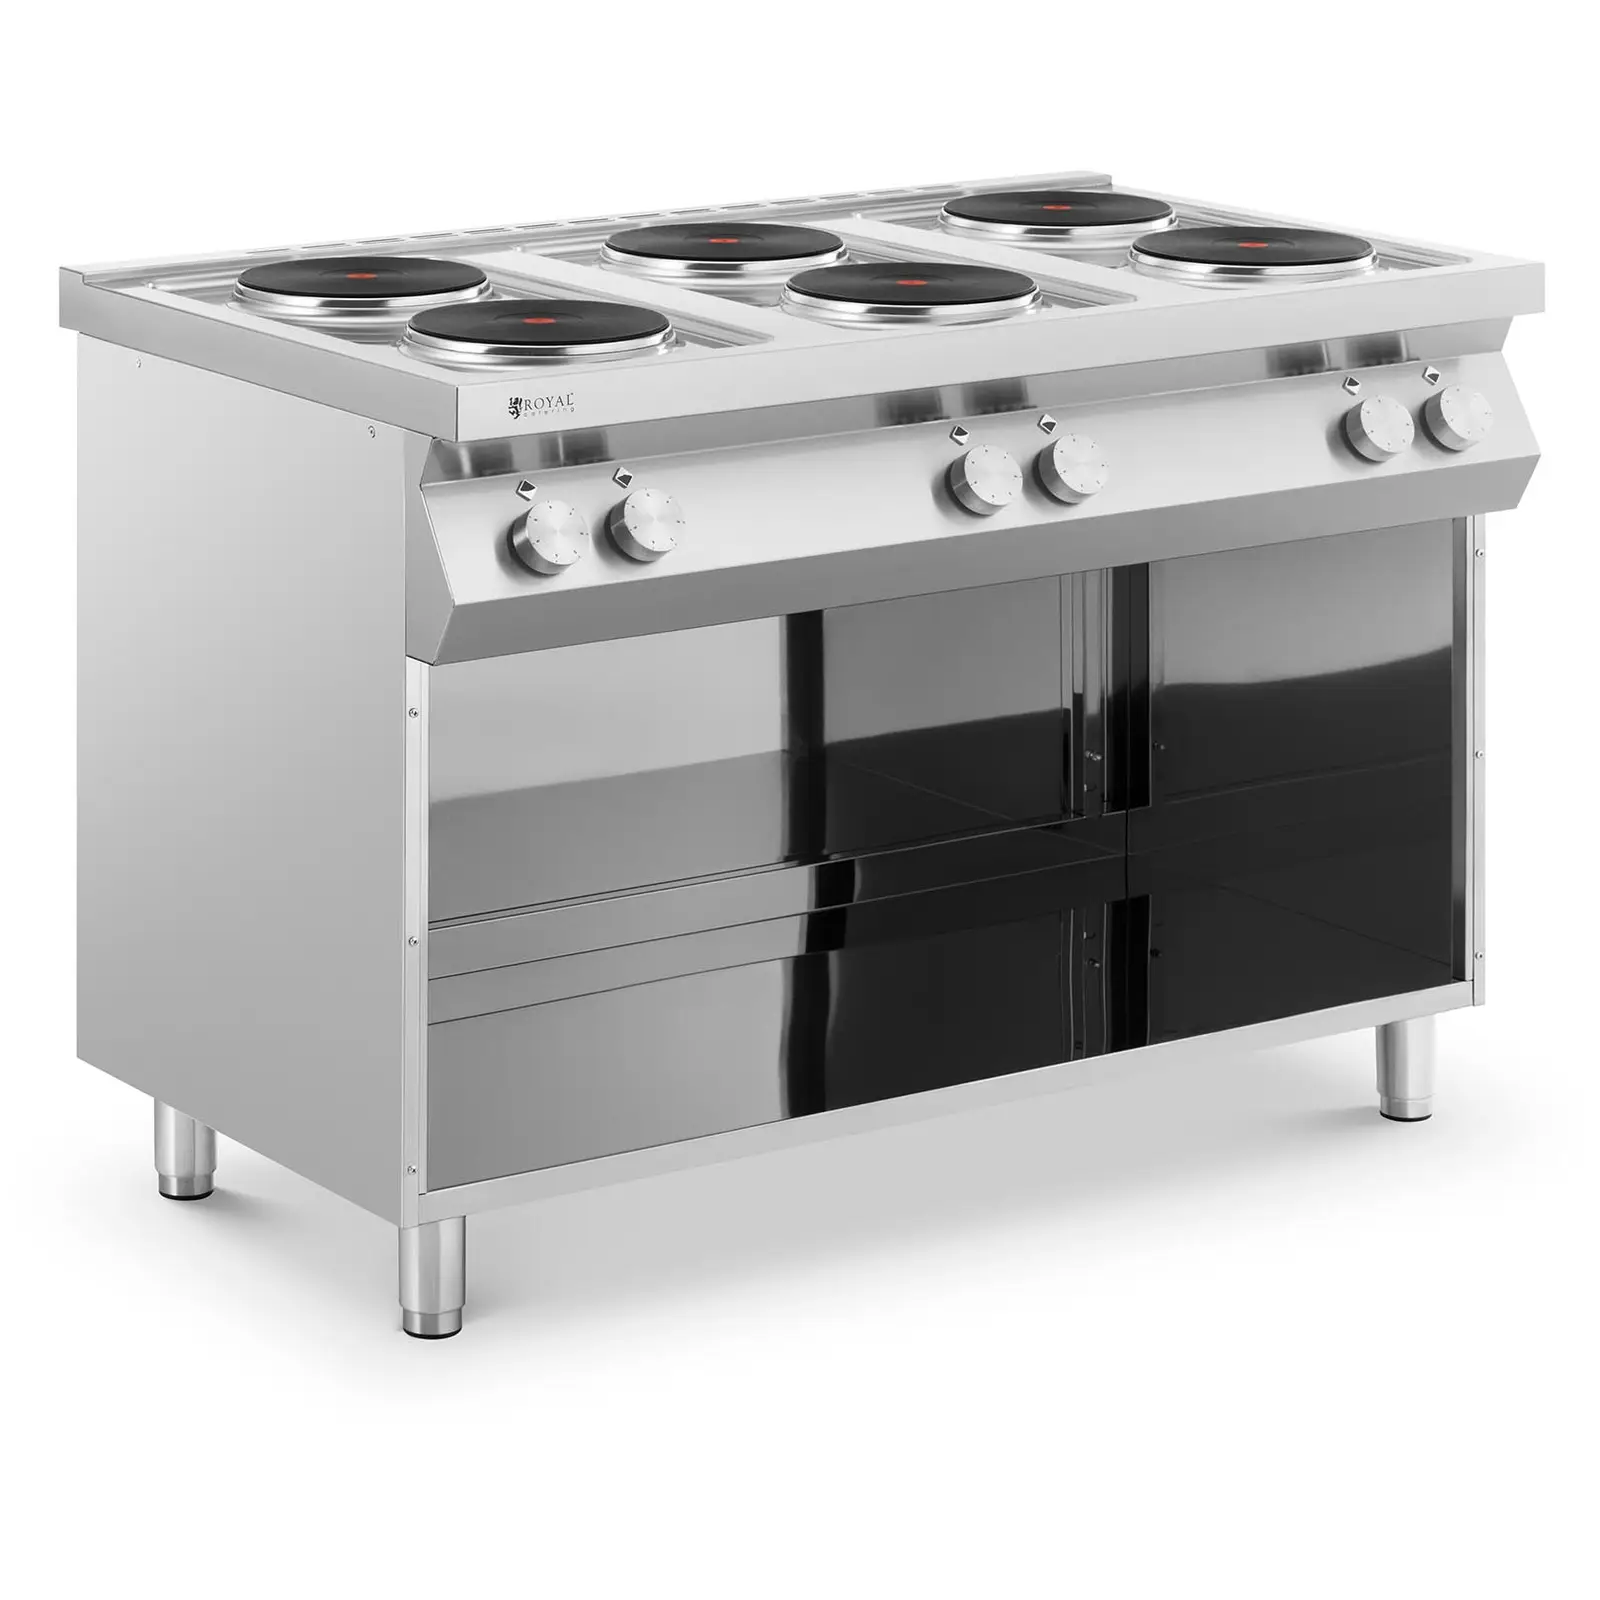 Cocina eléctrica para gastronomía - 15600 W - 6 placas - mueble bajo - Royal Catering